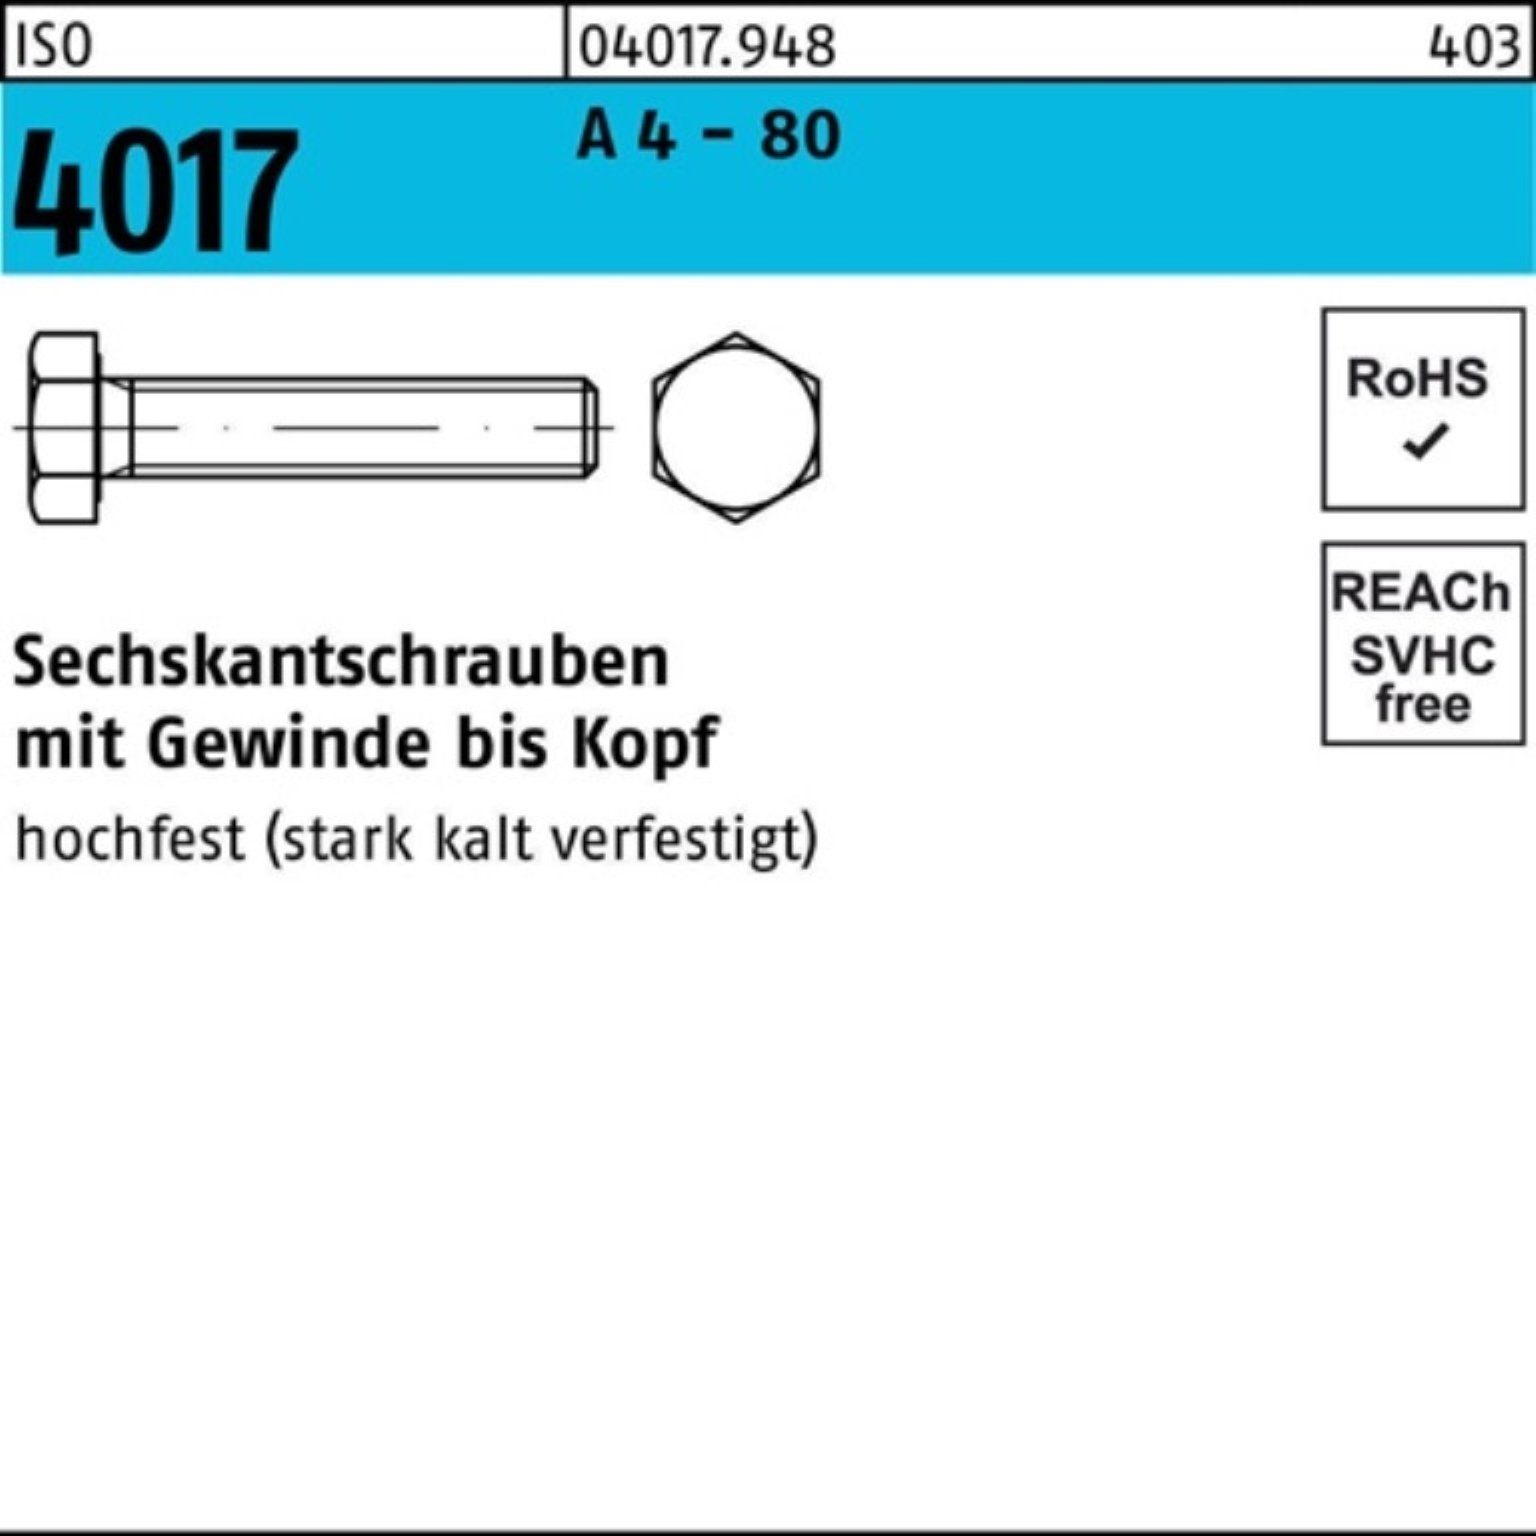 ISO Bufab Sechskantschraube 4 M16x 80 VG 70 Pack IS 25 Stück A 4017 100er Sechskantschraube -